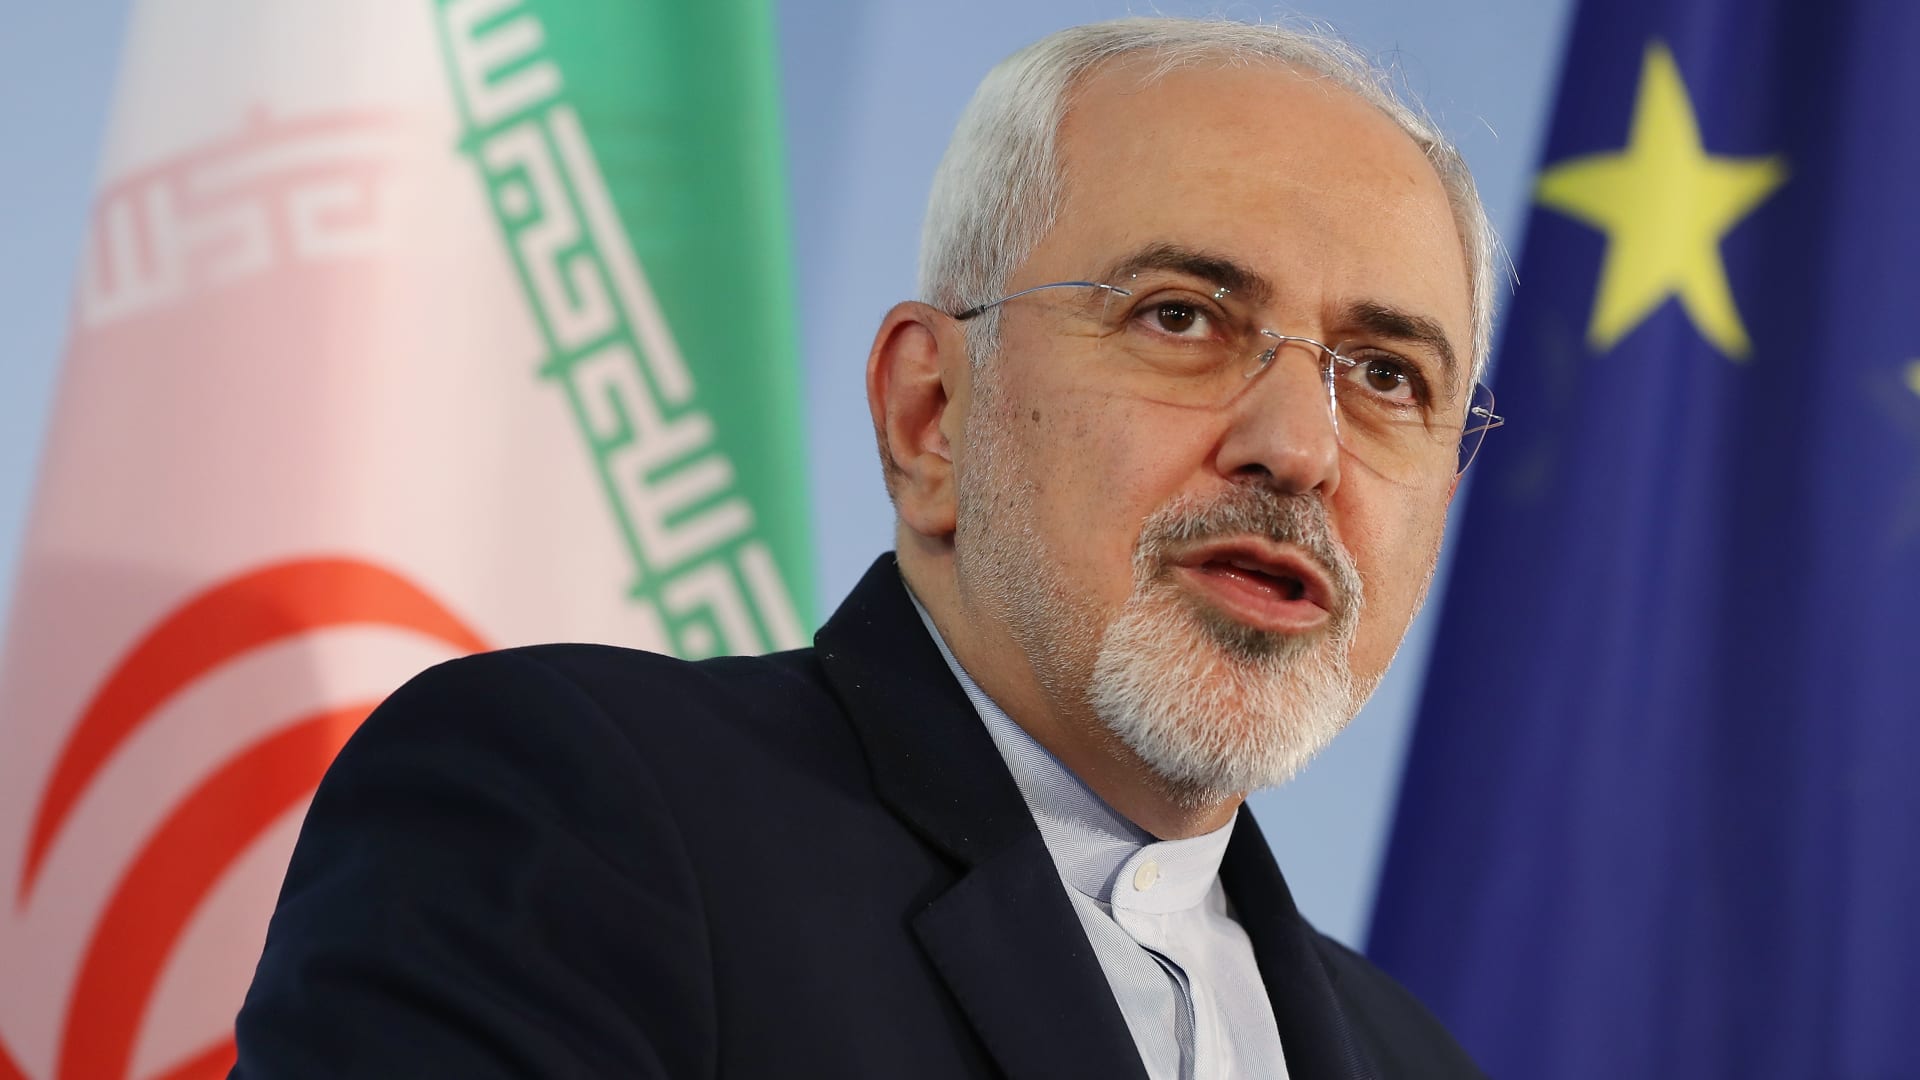 إيران تترقب نتائج الانتخابات الرئاسية ورئيسي الأوفر حظًا